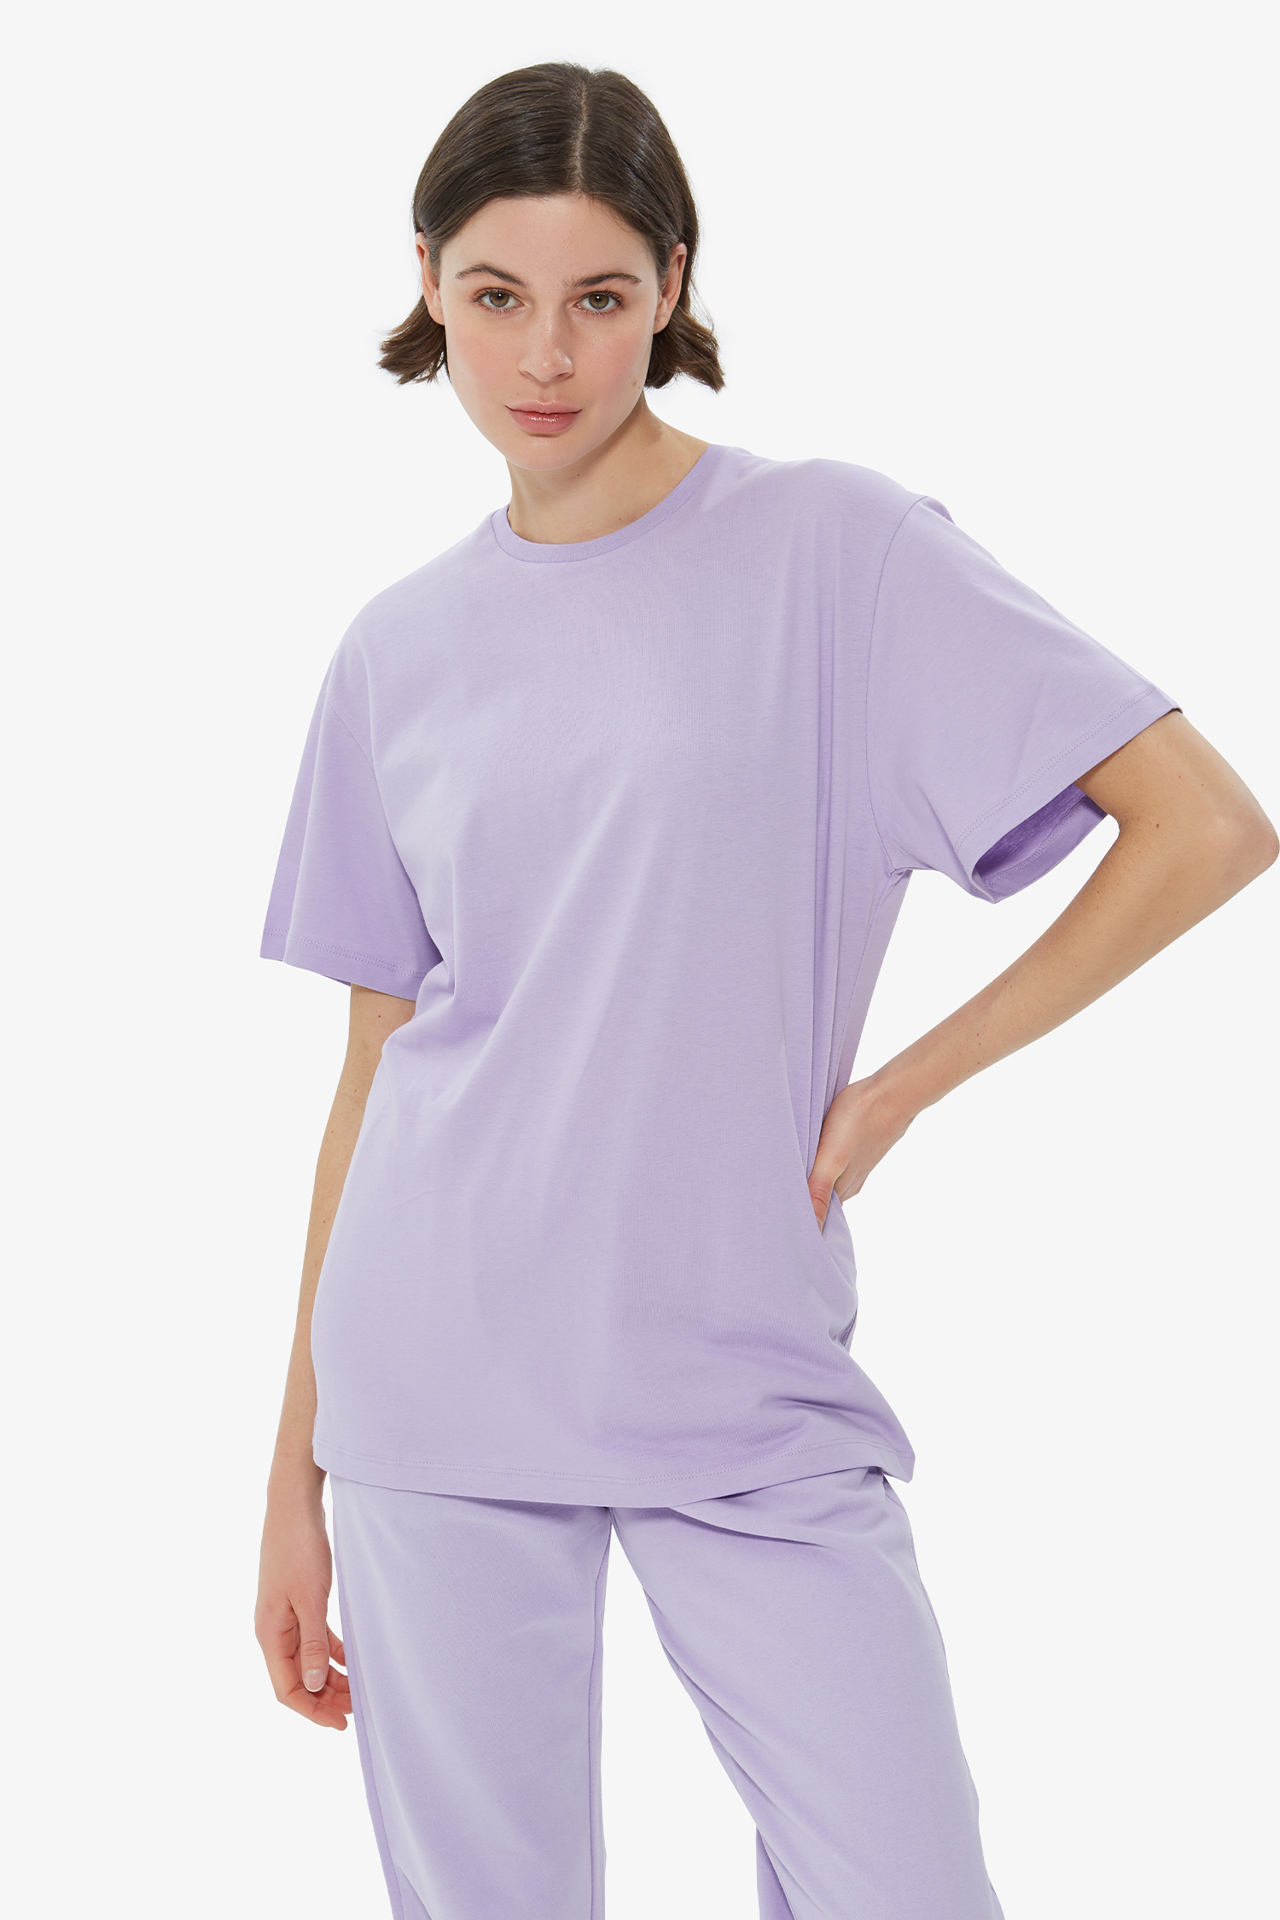 - Dahlia Bianca - | Tshirt Printed Lilac T-Shirt Back